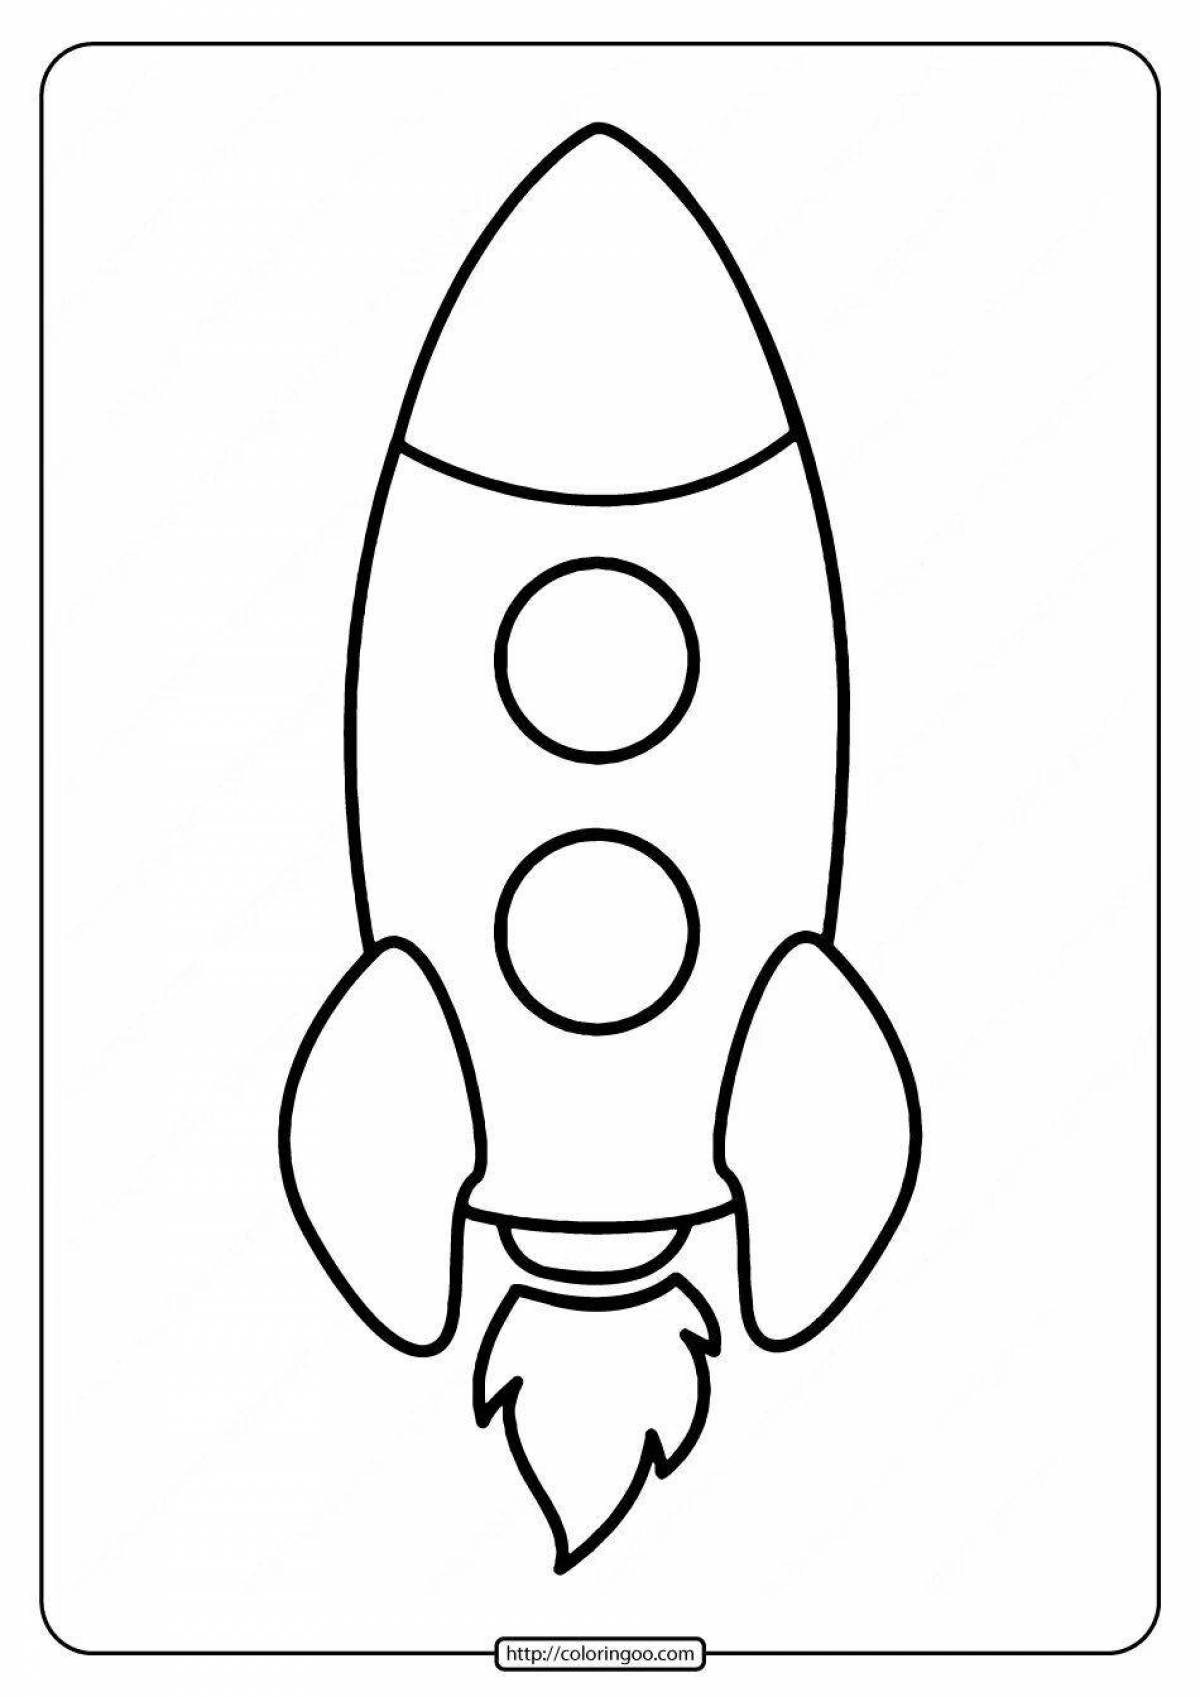 Симпатичная ракета-раскраска для детей